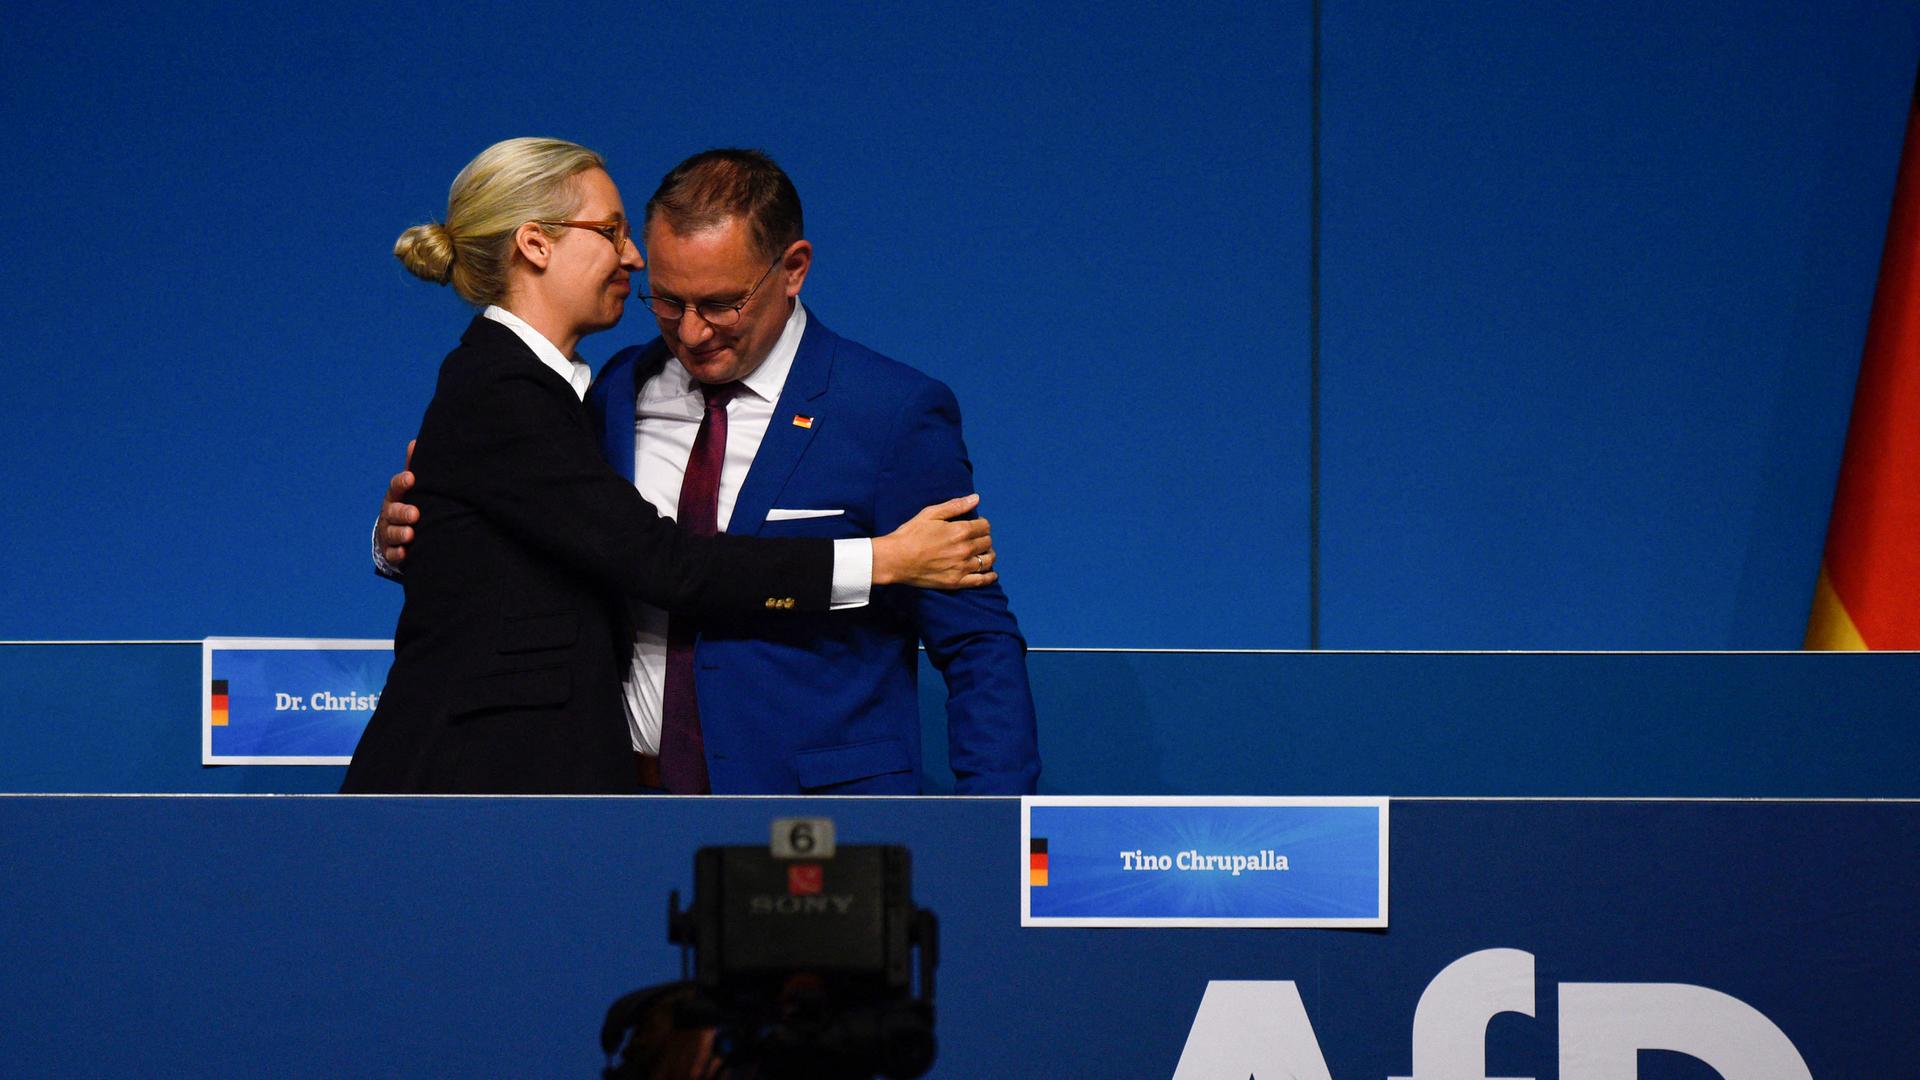 Alice Weidel umarmt Tino Chrupalla. Sie stehen beim Bundes-Parteitag von der AfD auf einer Bühne.